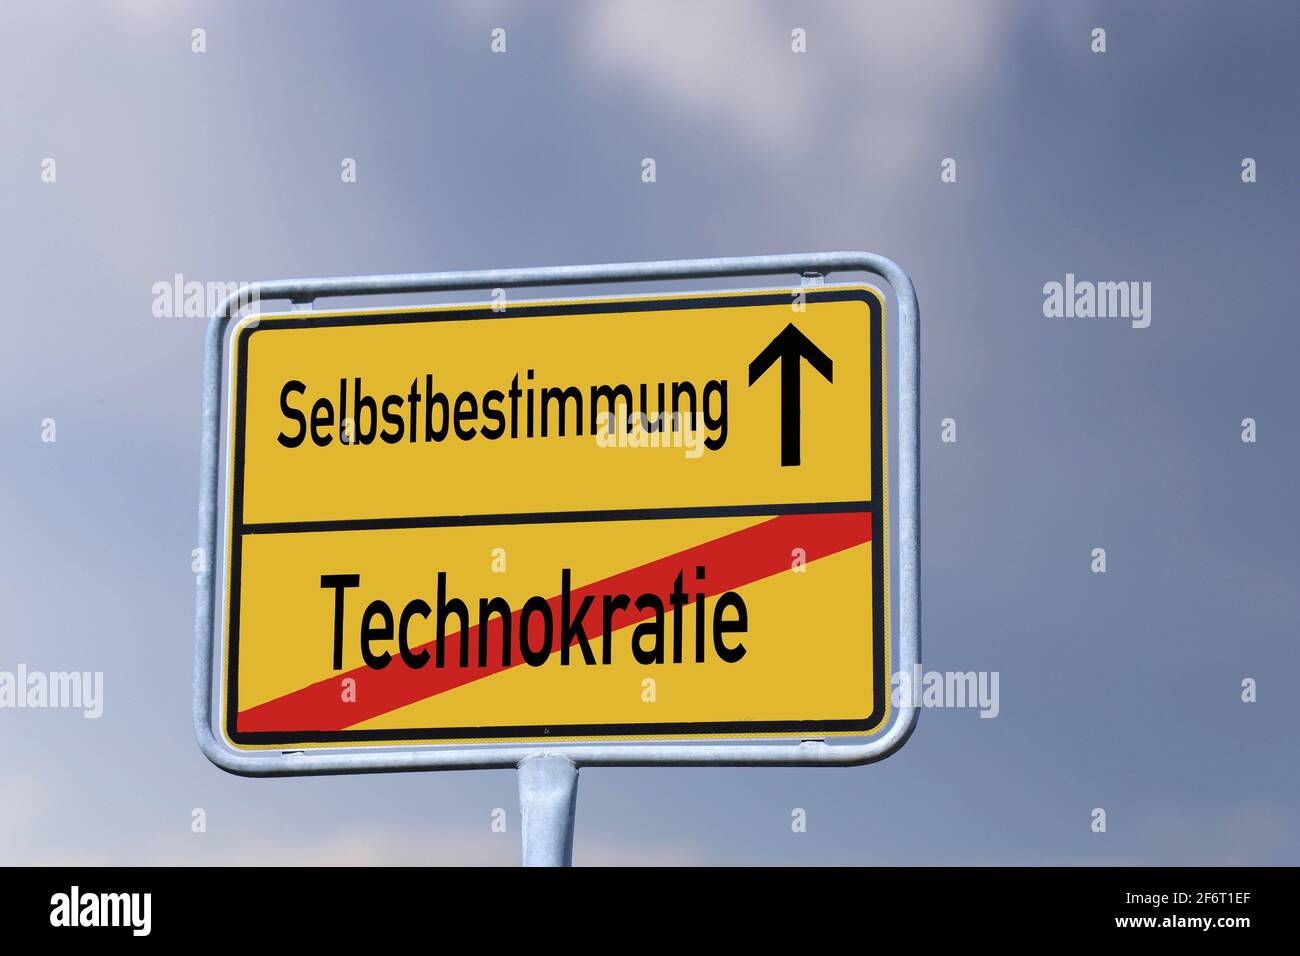 Symbolbild: Deutsches Stadtschild mit den Buchstaben Technokrate / Selbstbestimmung. Stockfoto